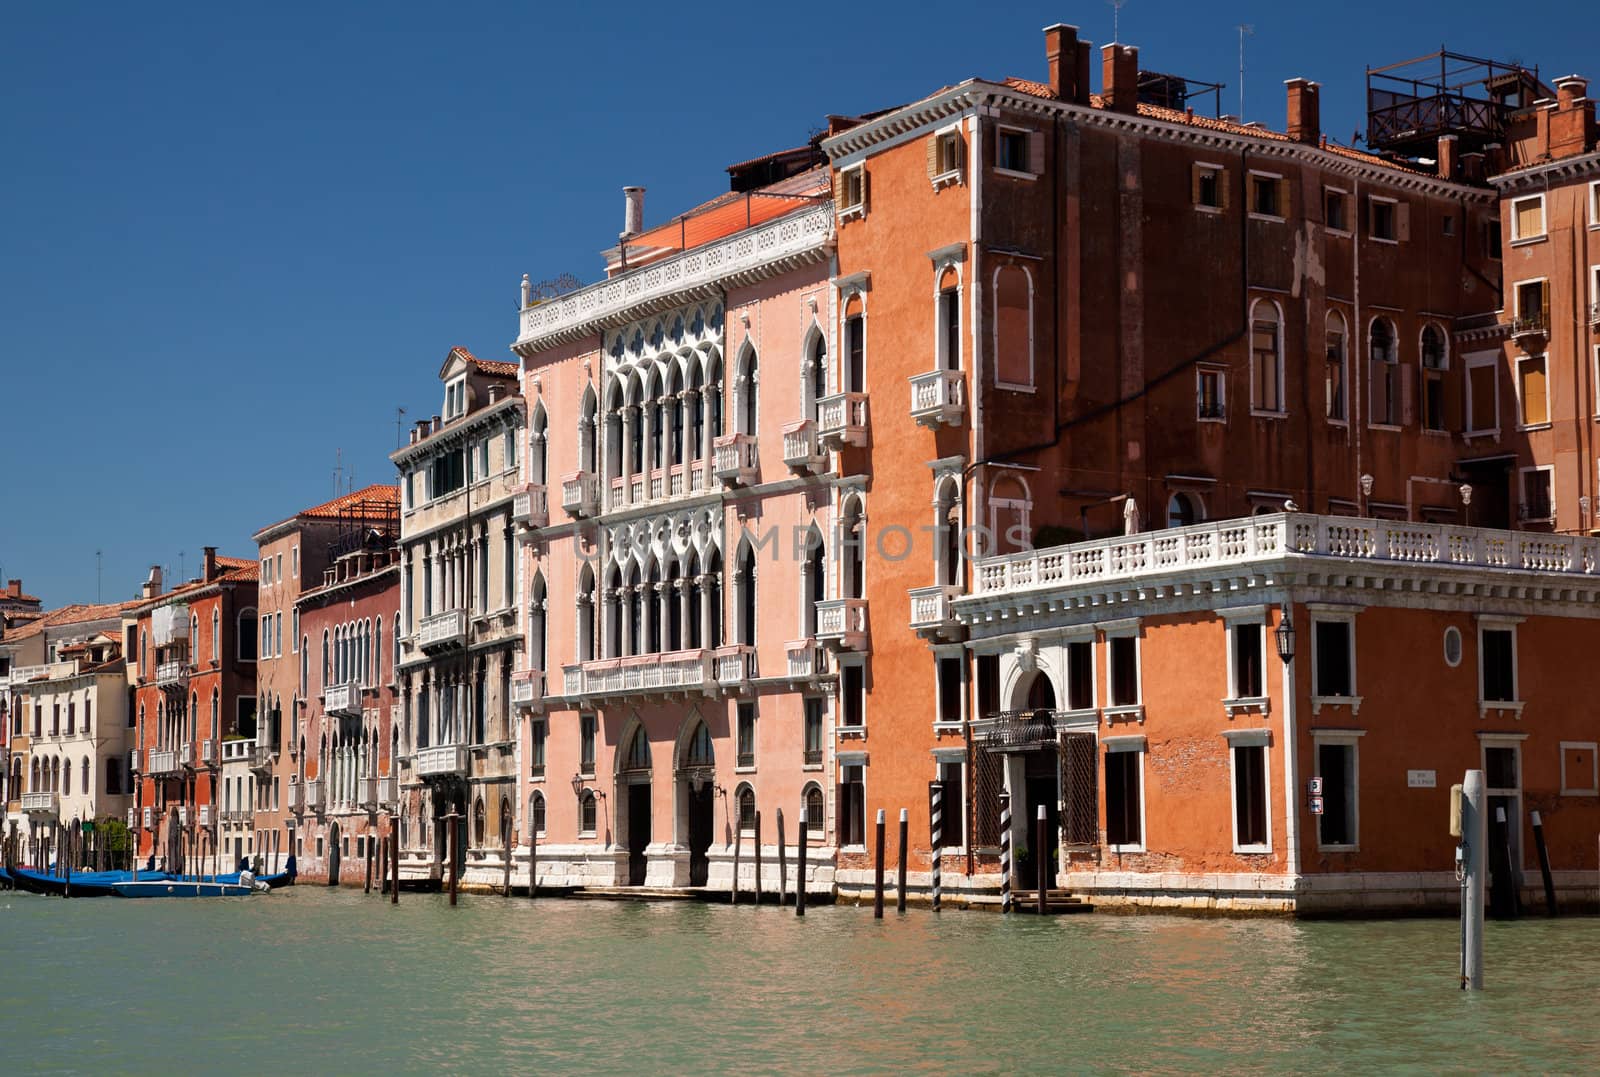 Orange buildings in Venice by steheap